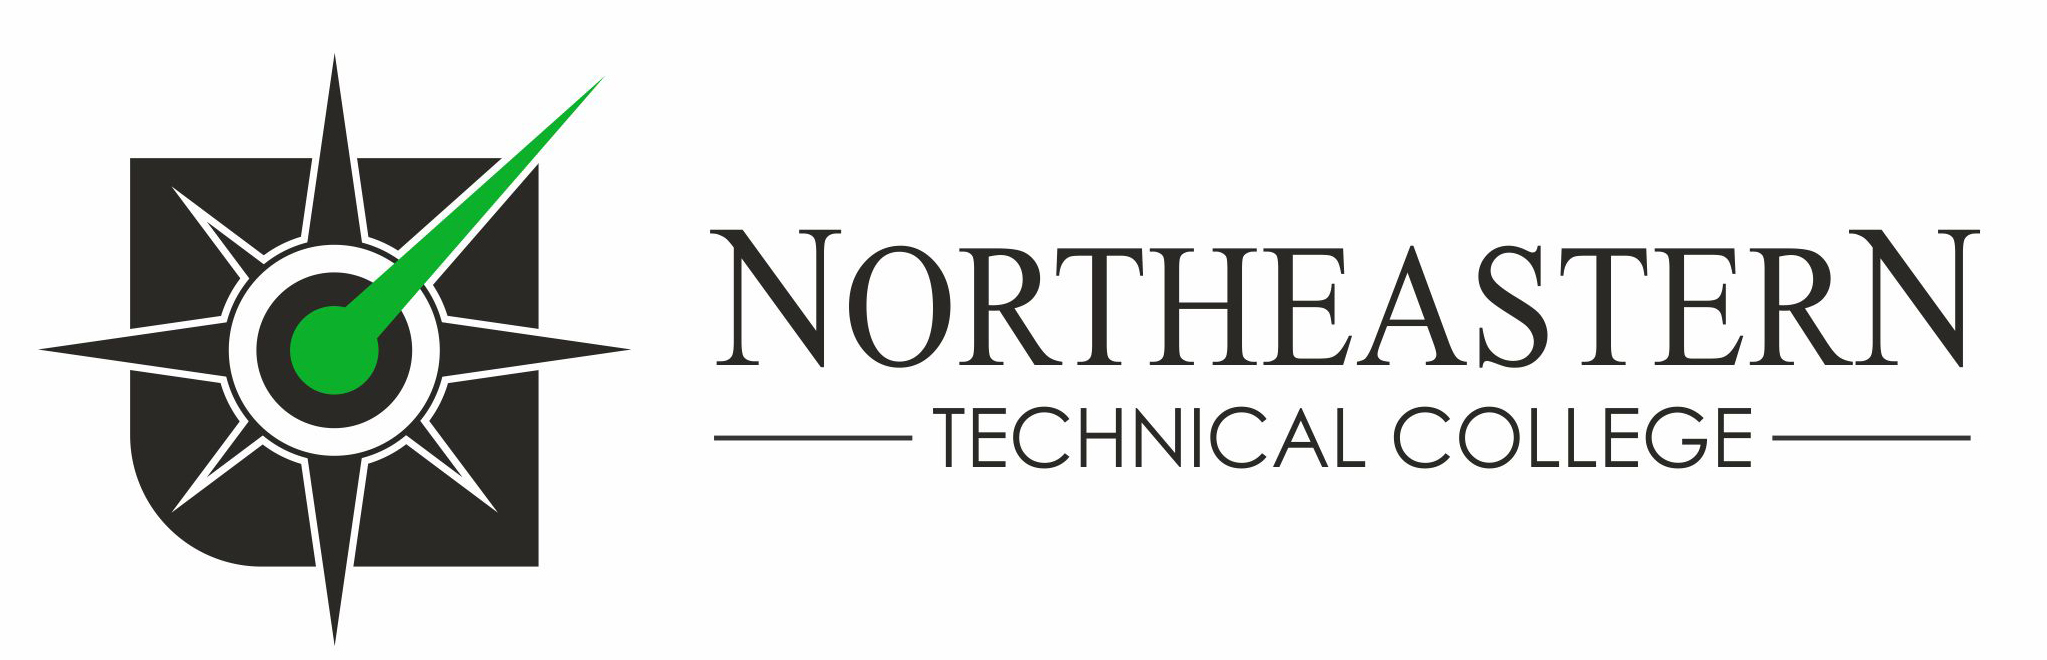 Northeastern Technical College Receives CUPAHR’s HR